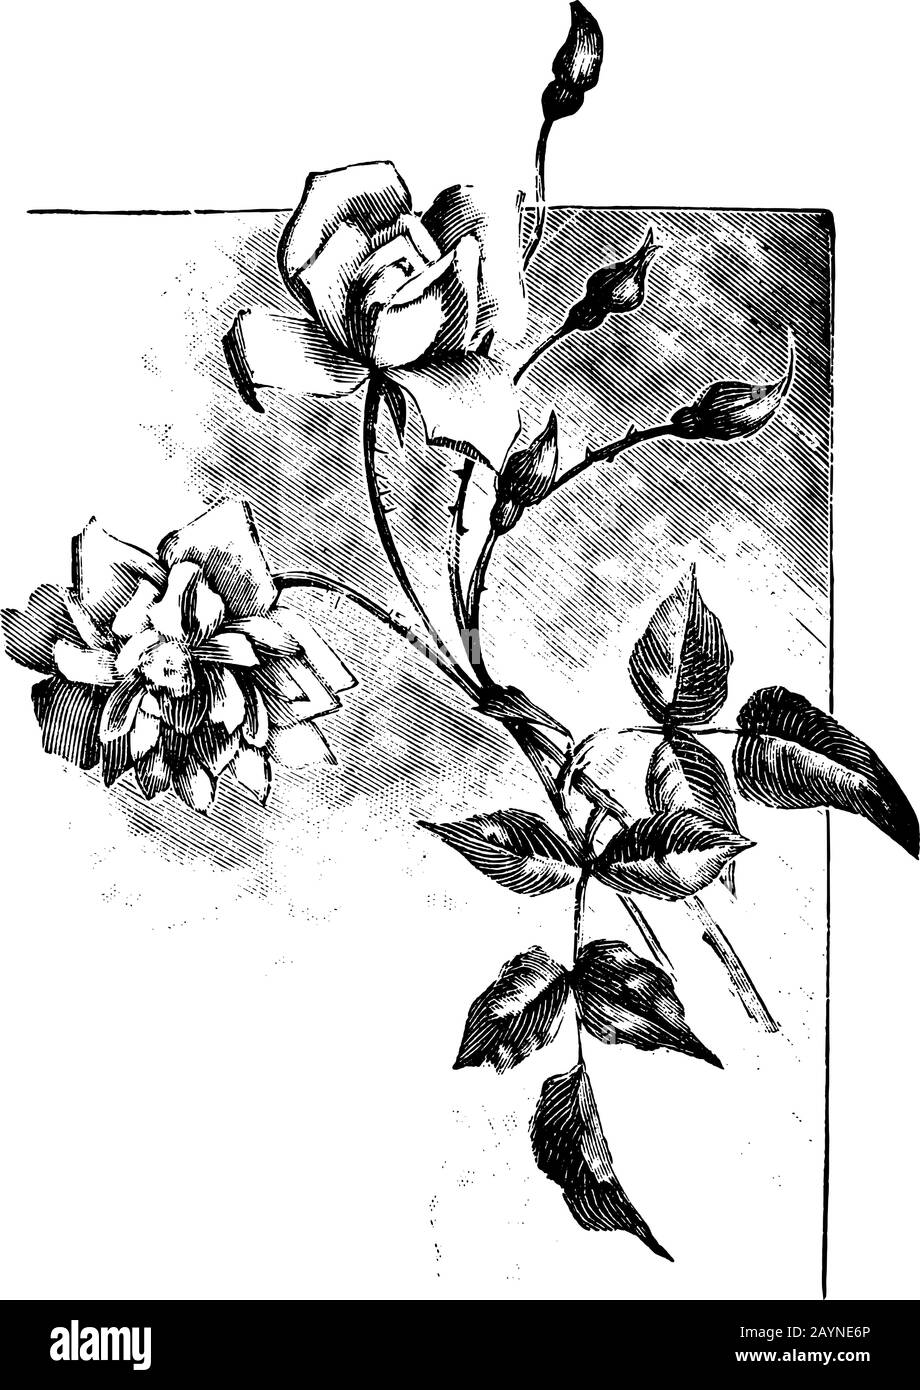 Antike Vintage-Line-Kunstillustration, Gravur oder Handzeichnung schöner Rosenblüten. Stock Vektor